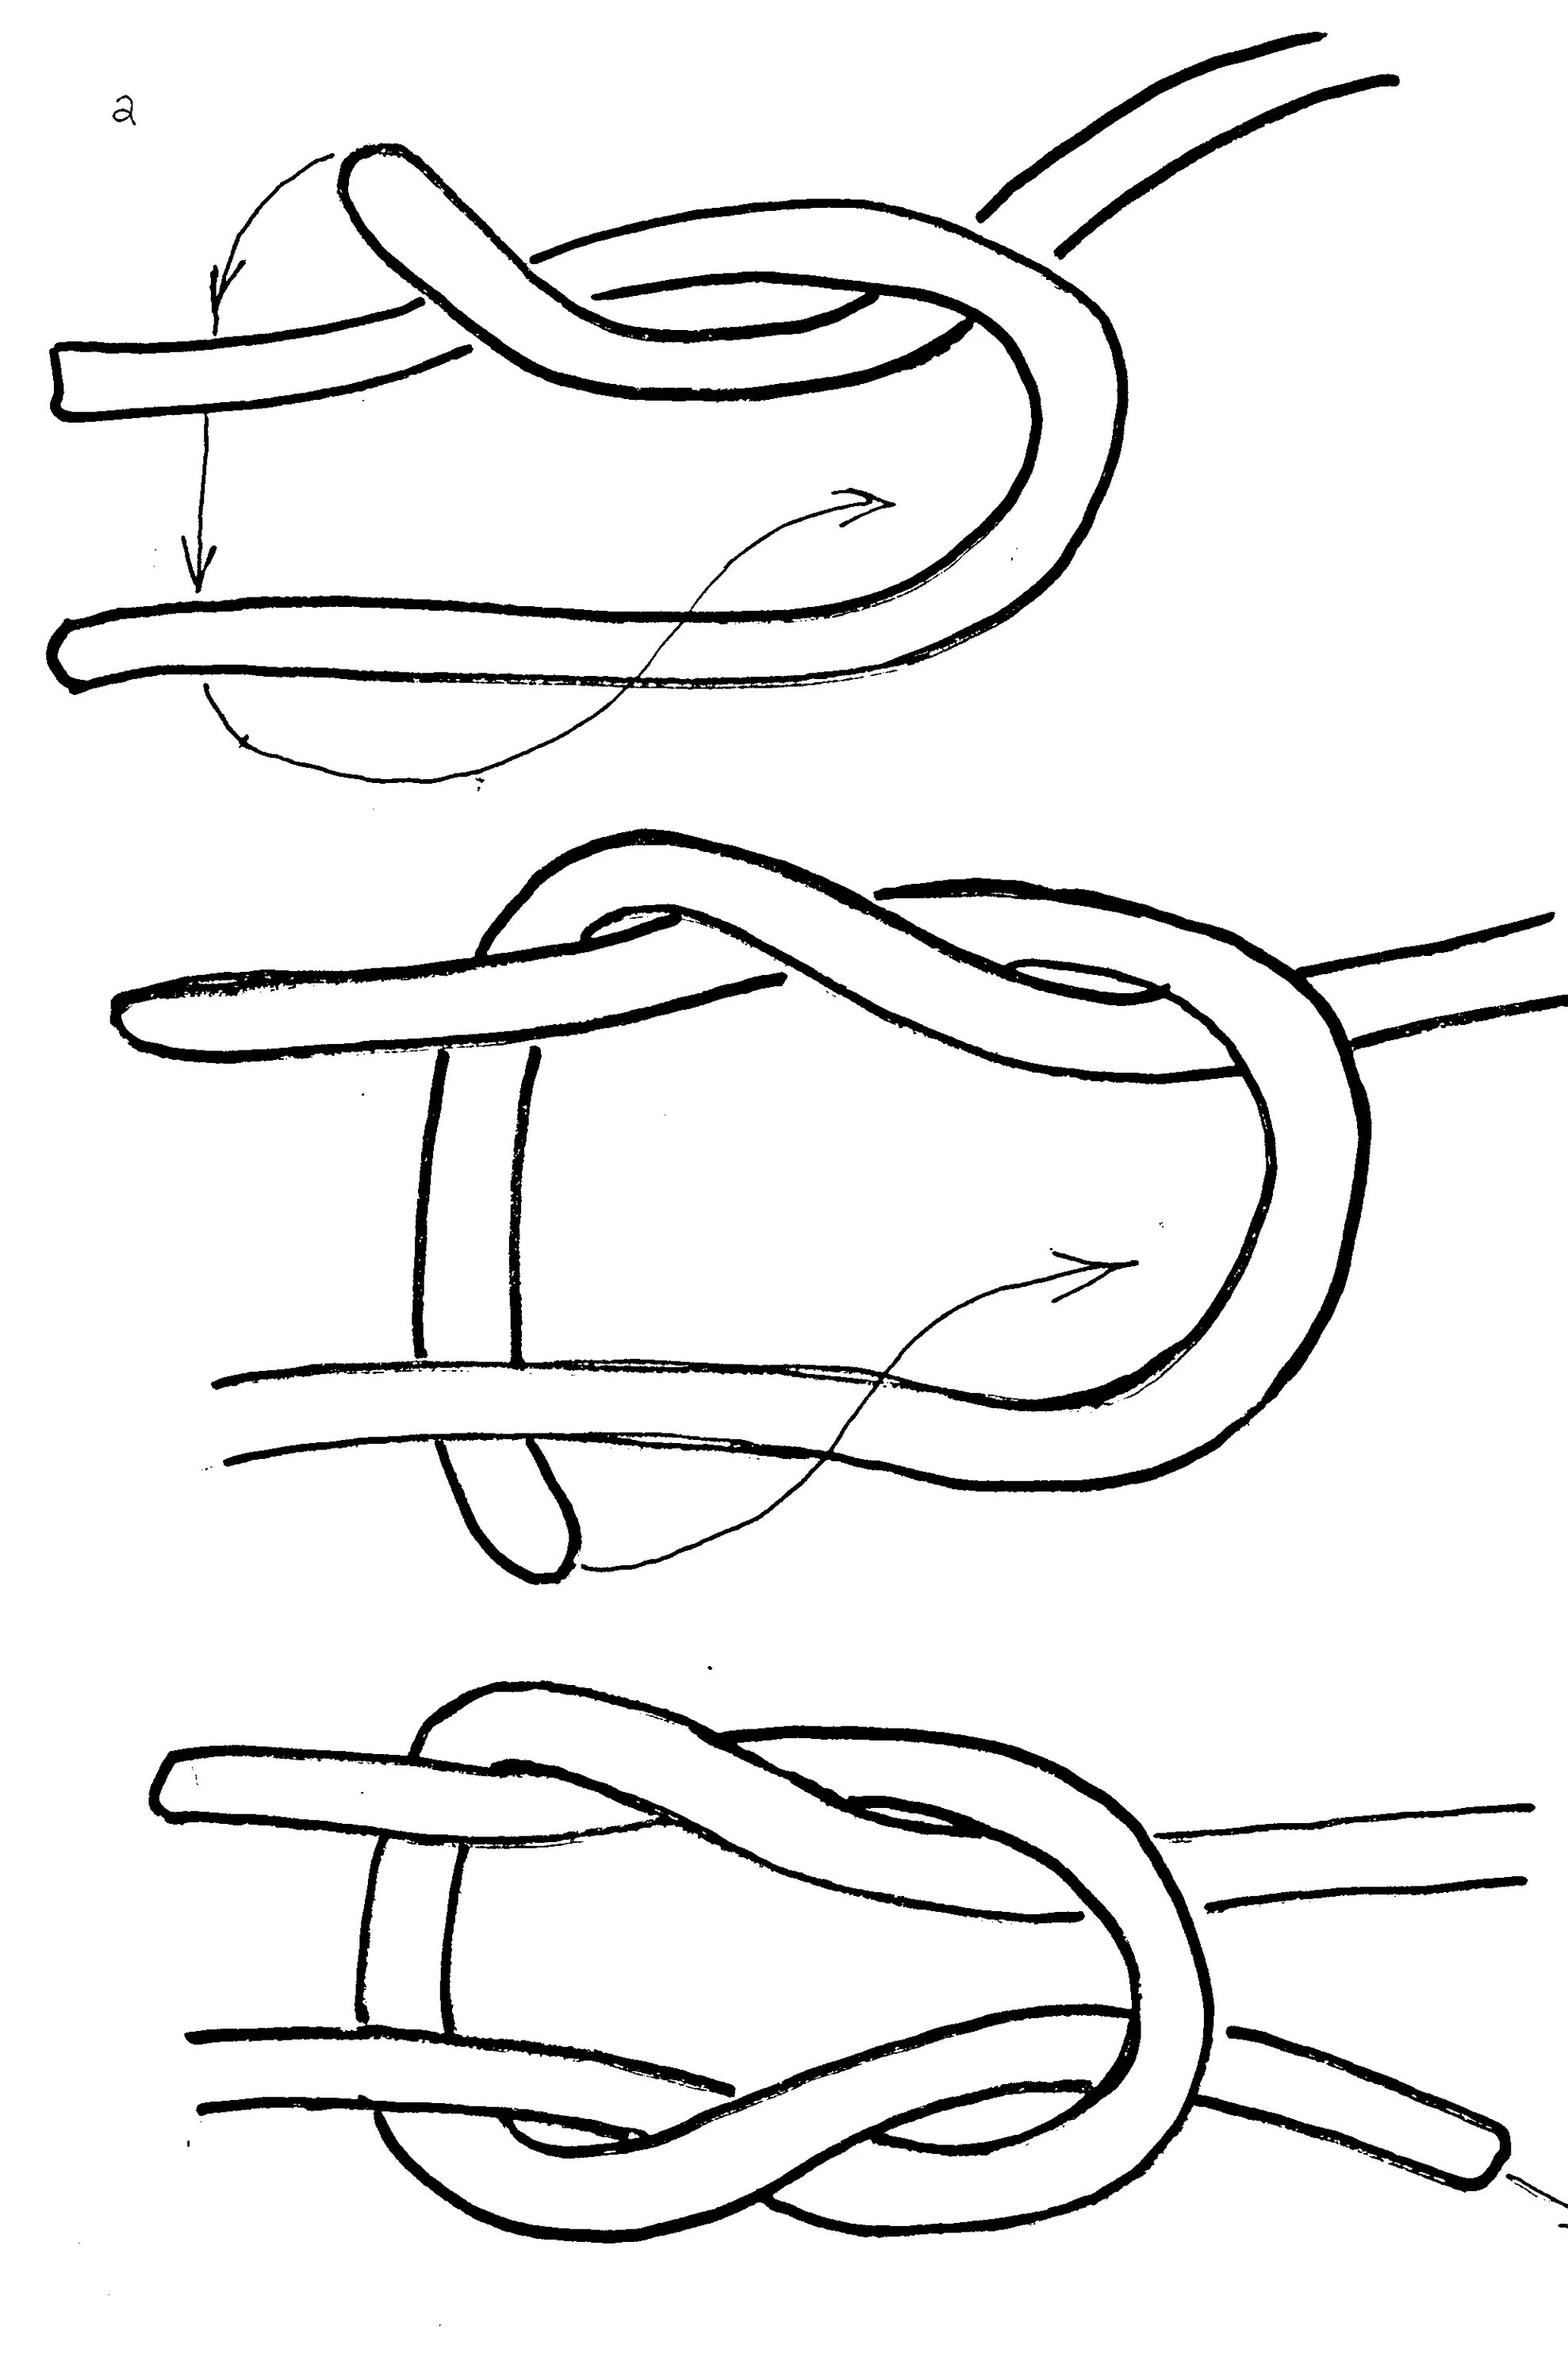 Схема завязывания морского узла. Фламандский узел схема. Как завязывать морской узел схема. Узел восьмерка швартовка.